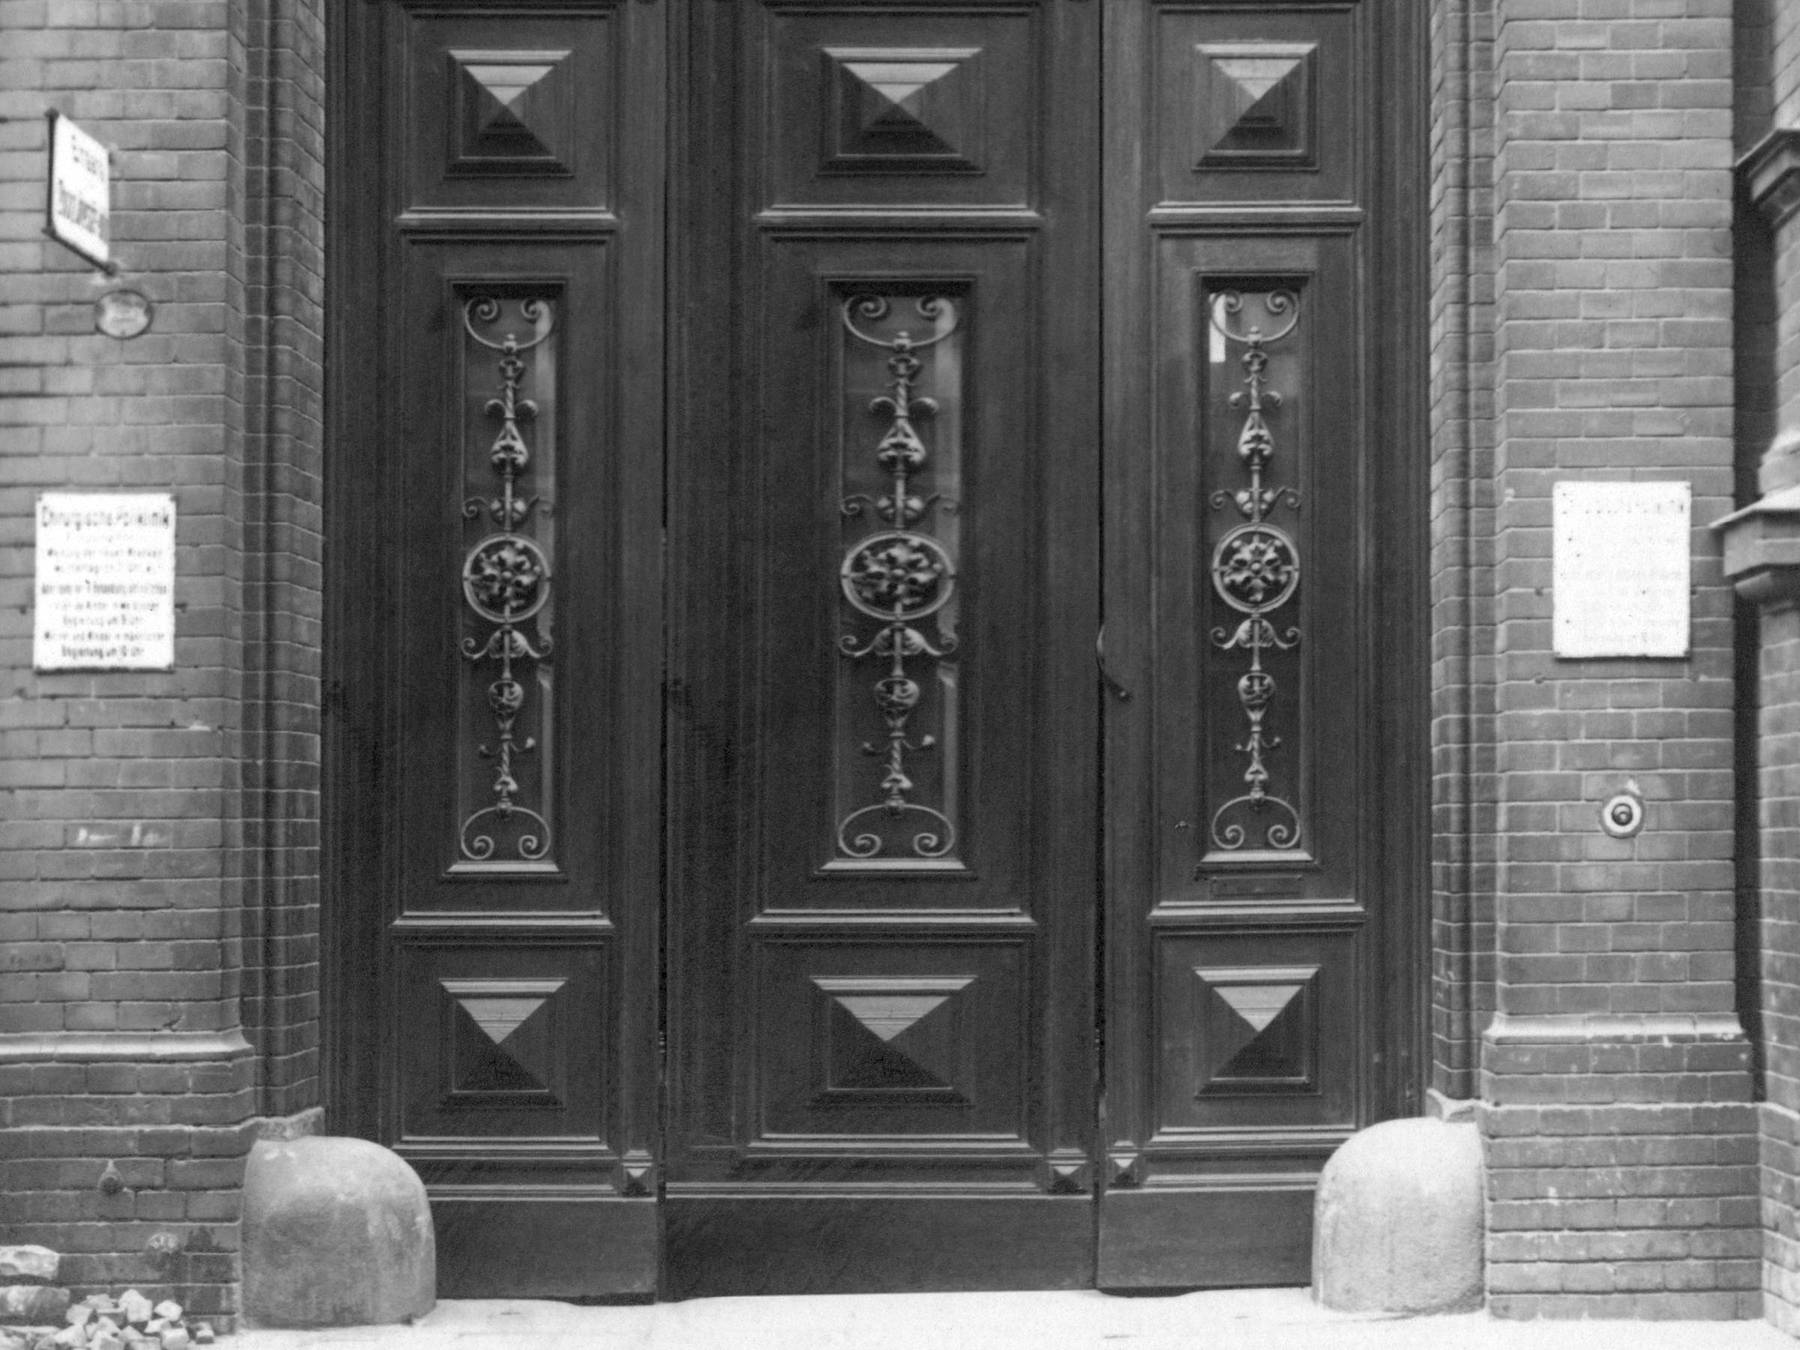 Fotografie, schwarz-weiß, vermutlich aus den 1920er Jahren. Das Foto zeigt das Portal zur chirurgischen Poliklinik der Charité. Die schwere Holztür steht offen. 